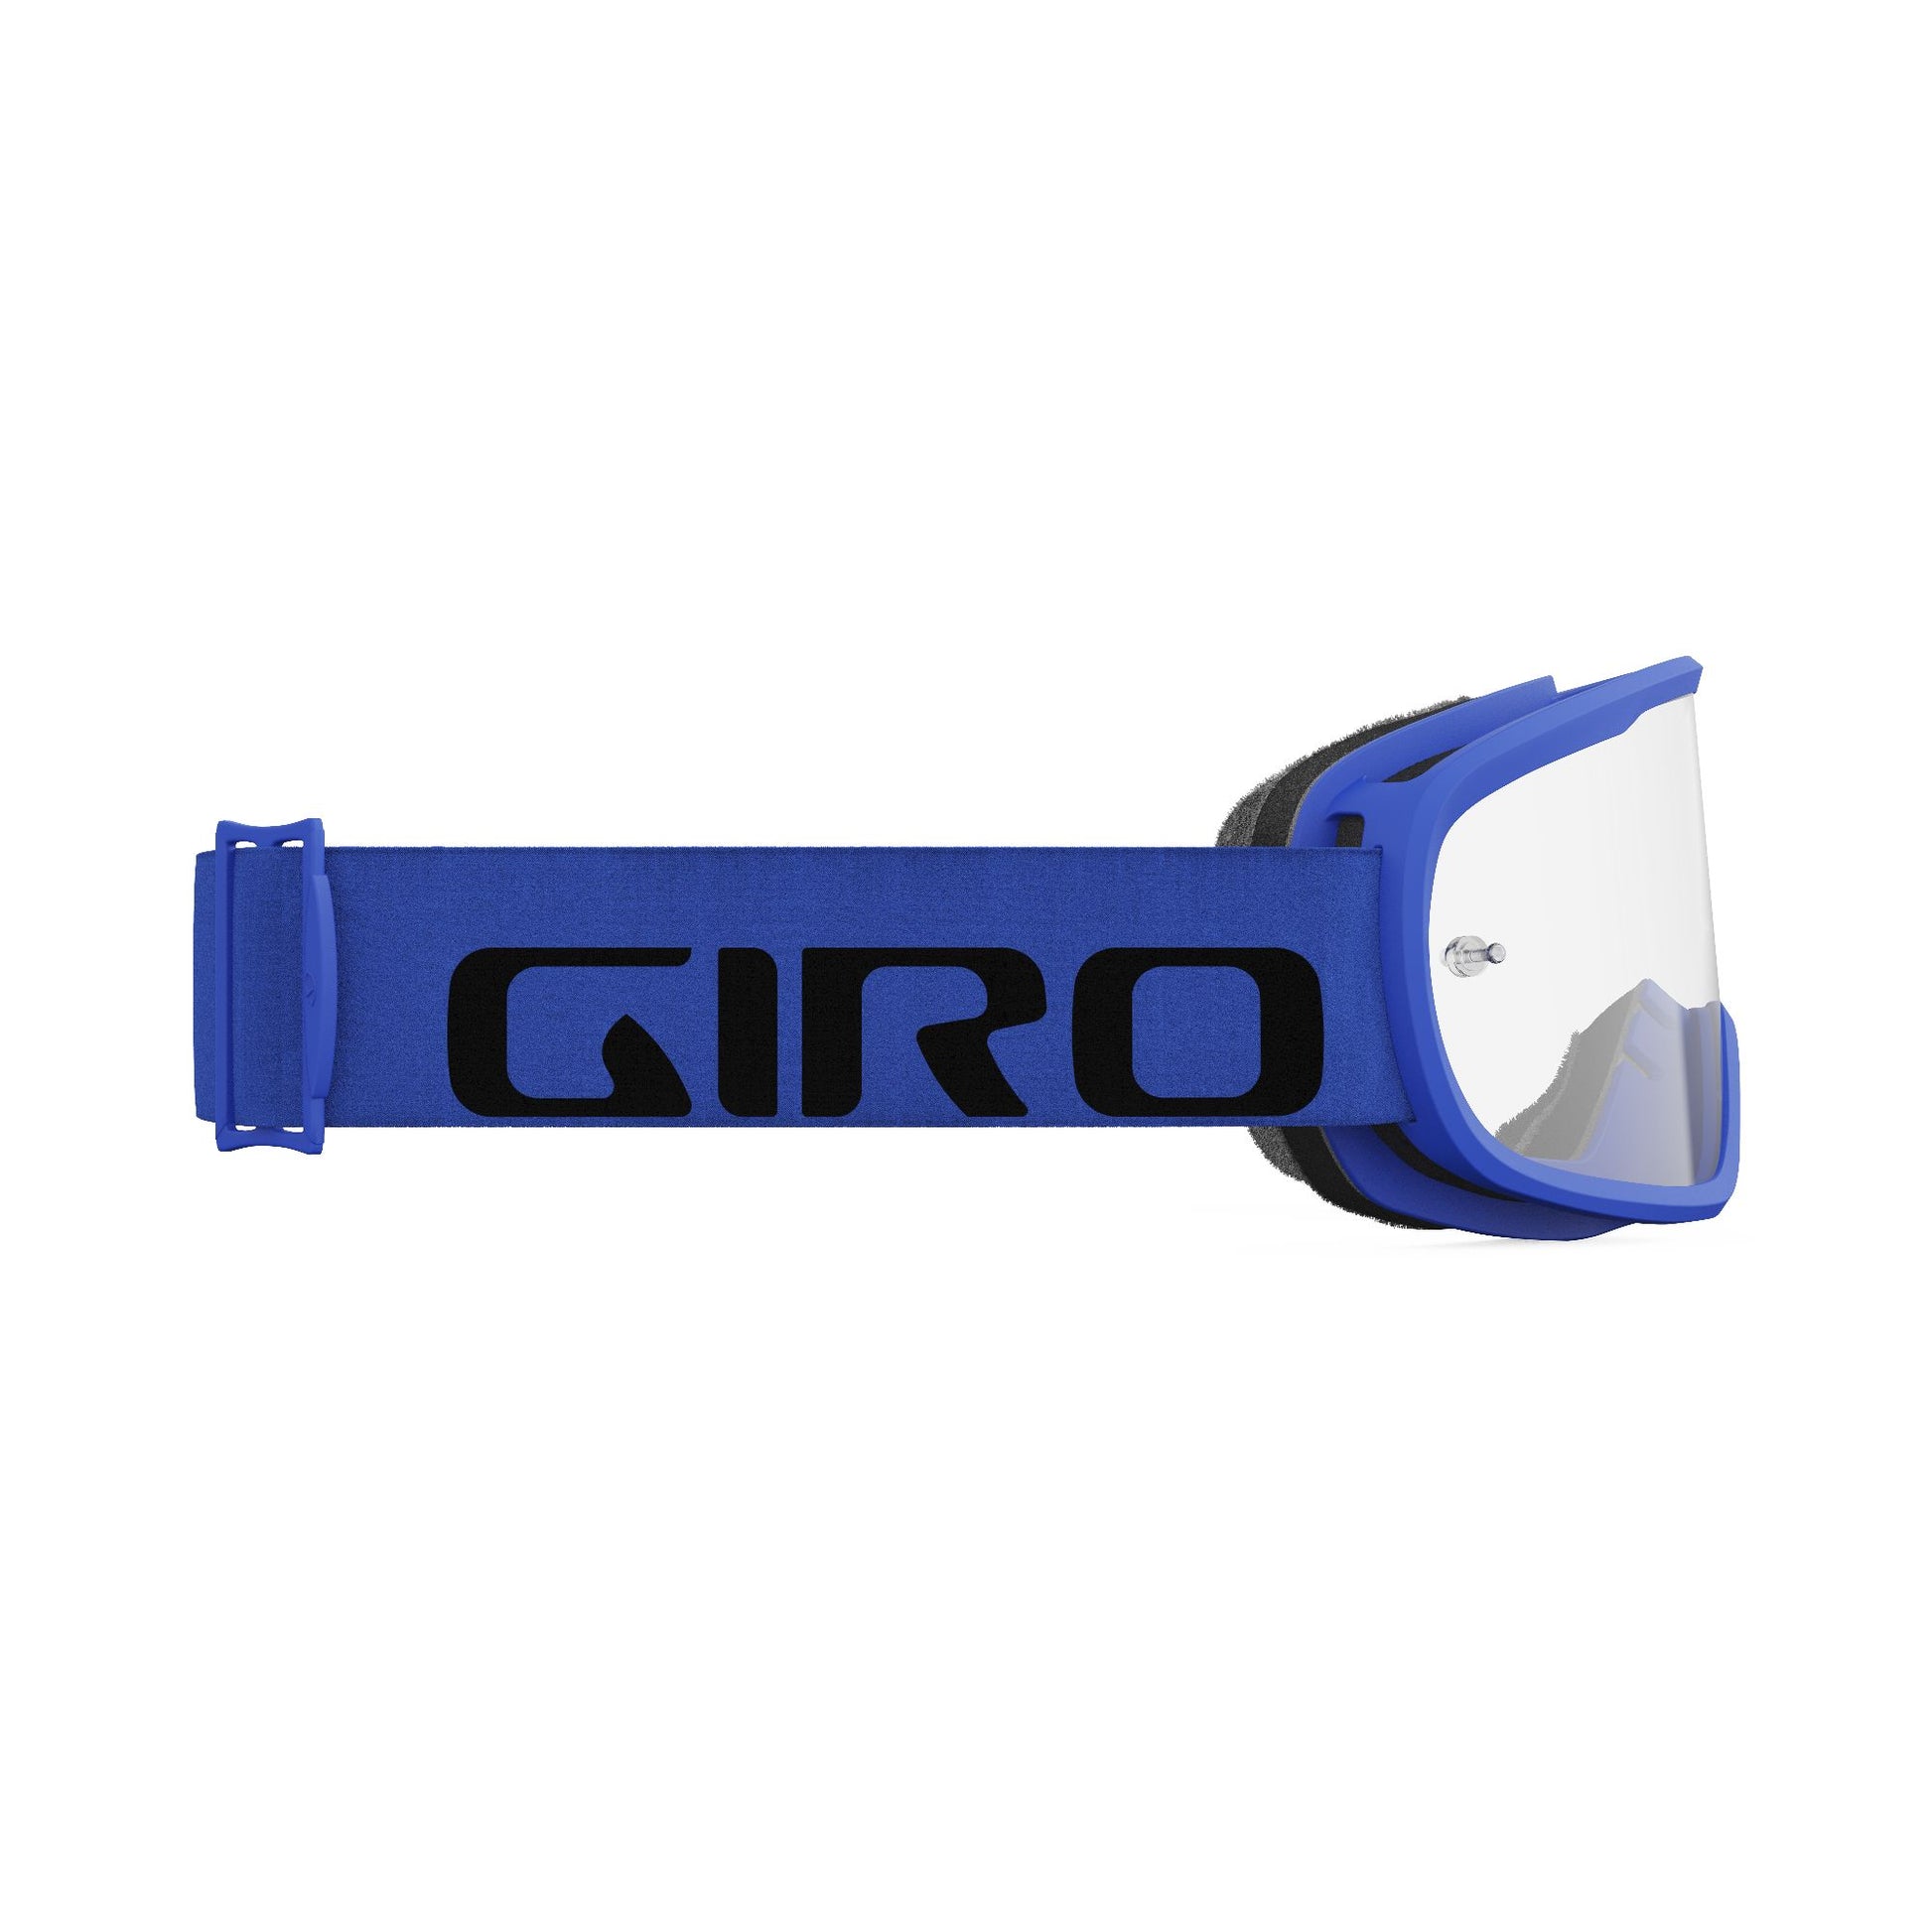 Giro Tempo MTB Goggle Blue Clear Bike Goggles